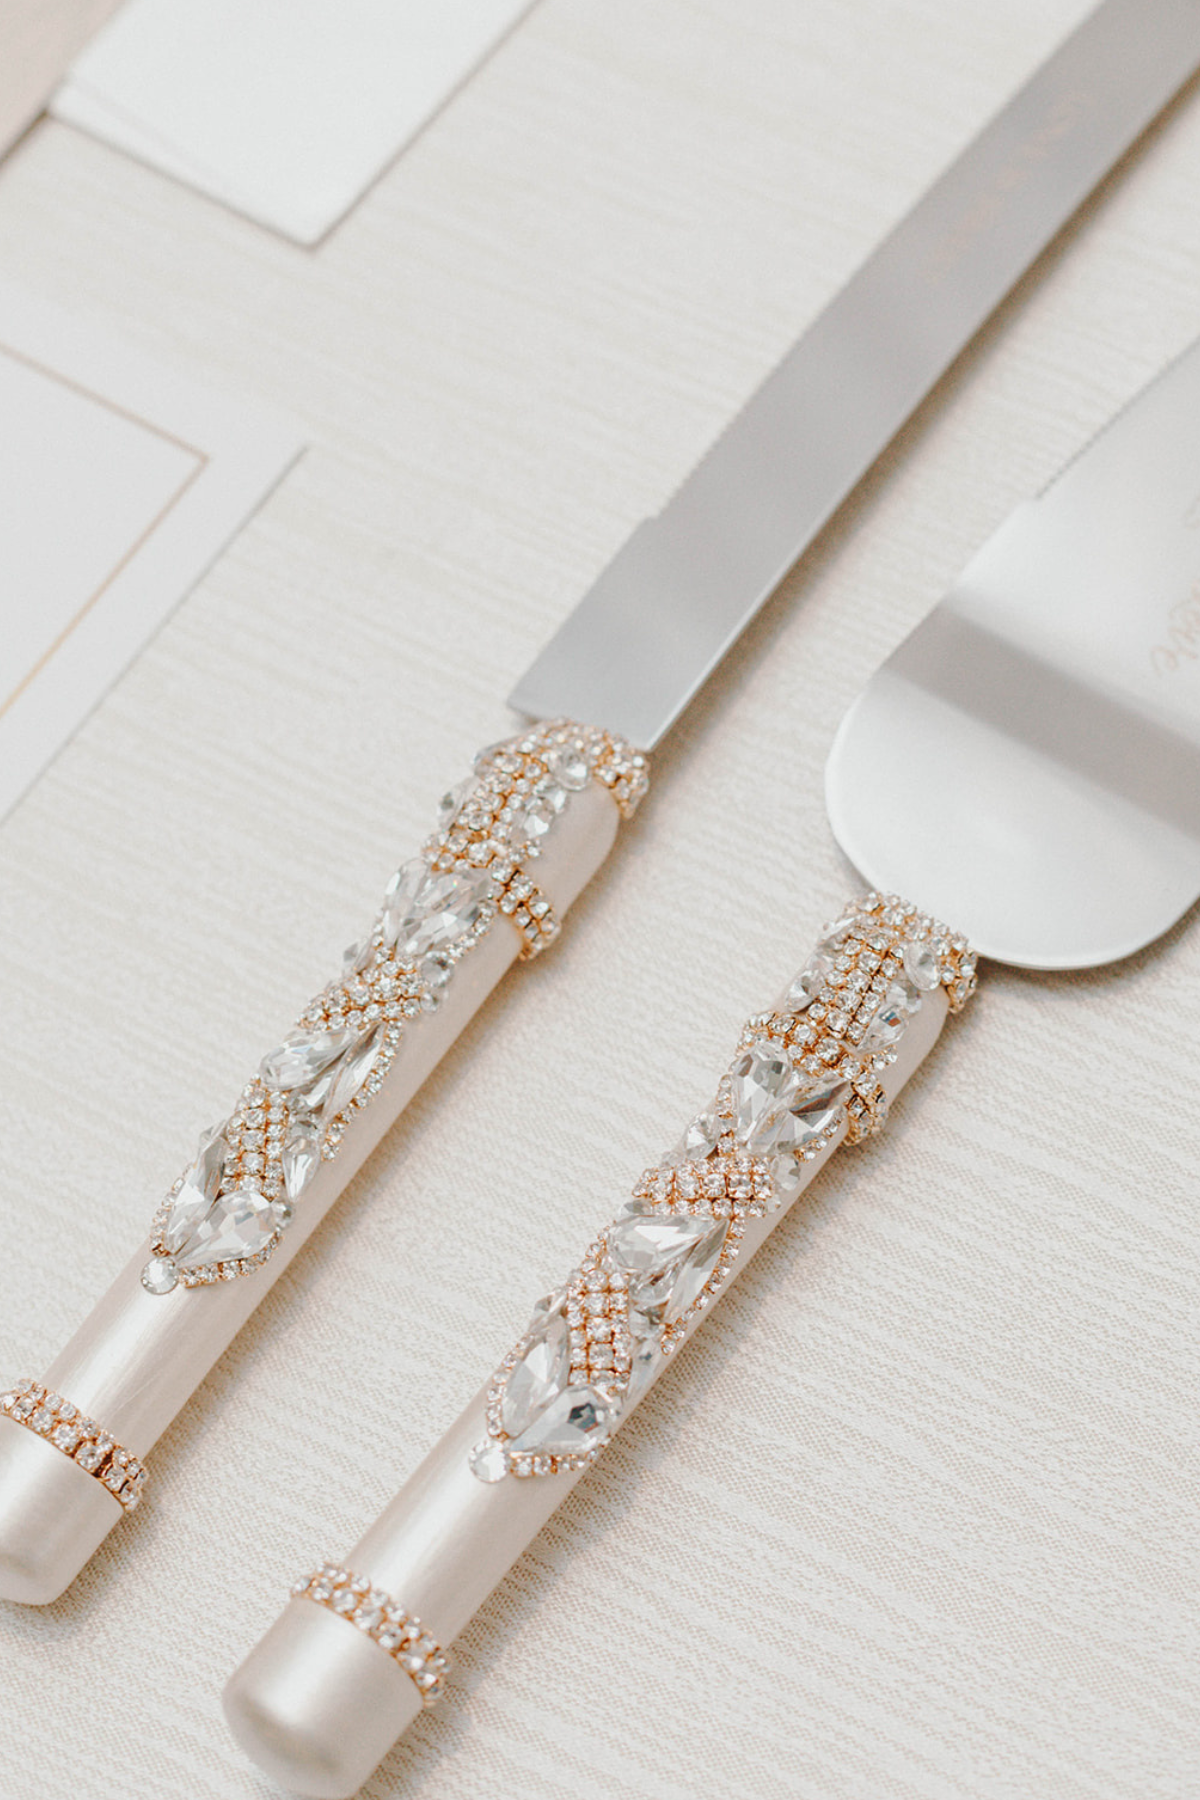 white-gold-luxury-wedding-cake-knife